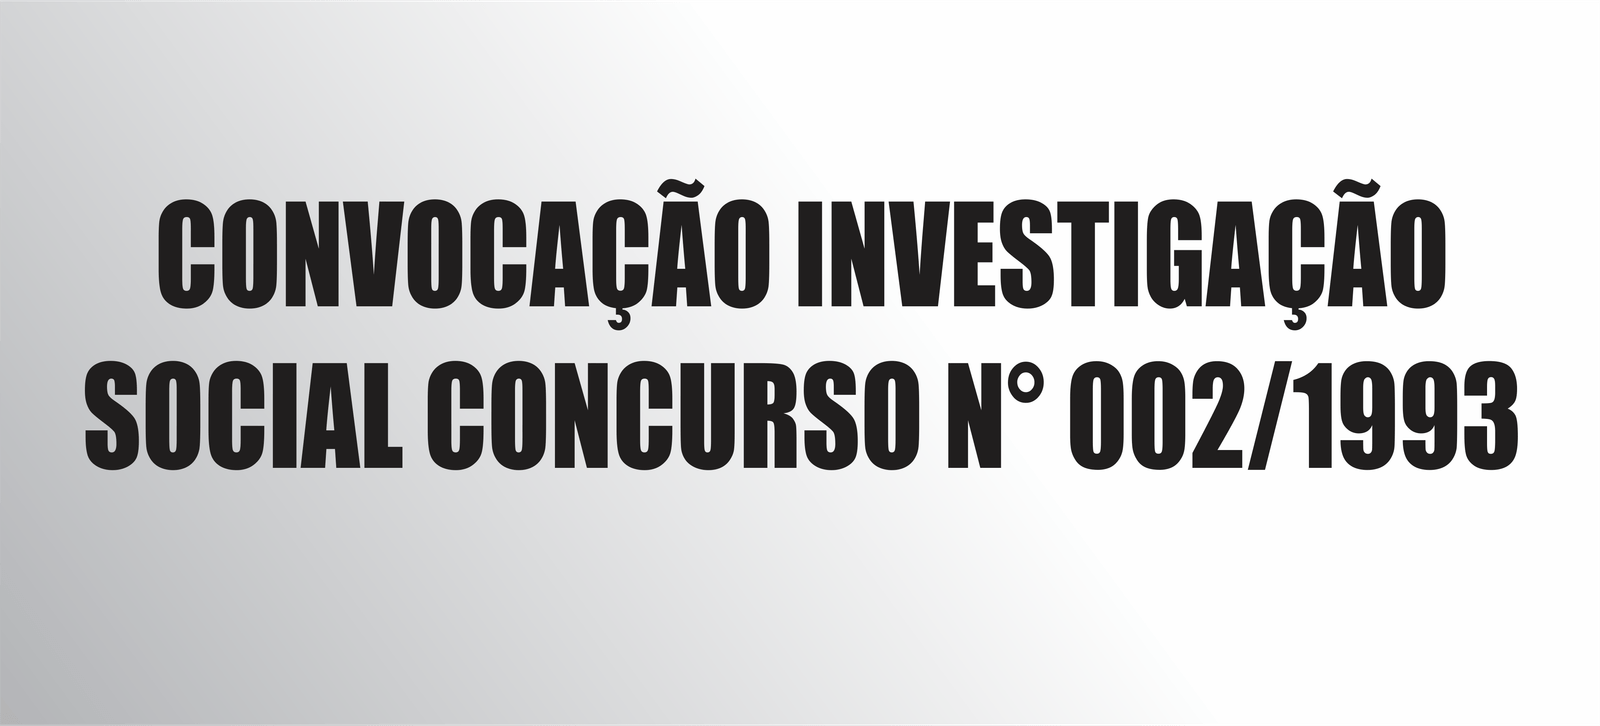 CONVOCAÇÃO INVESTIGAÇÃO SOCIAL CONCURSO N° 002/1993